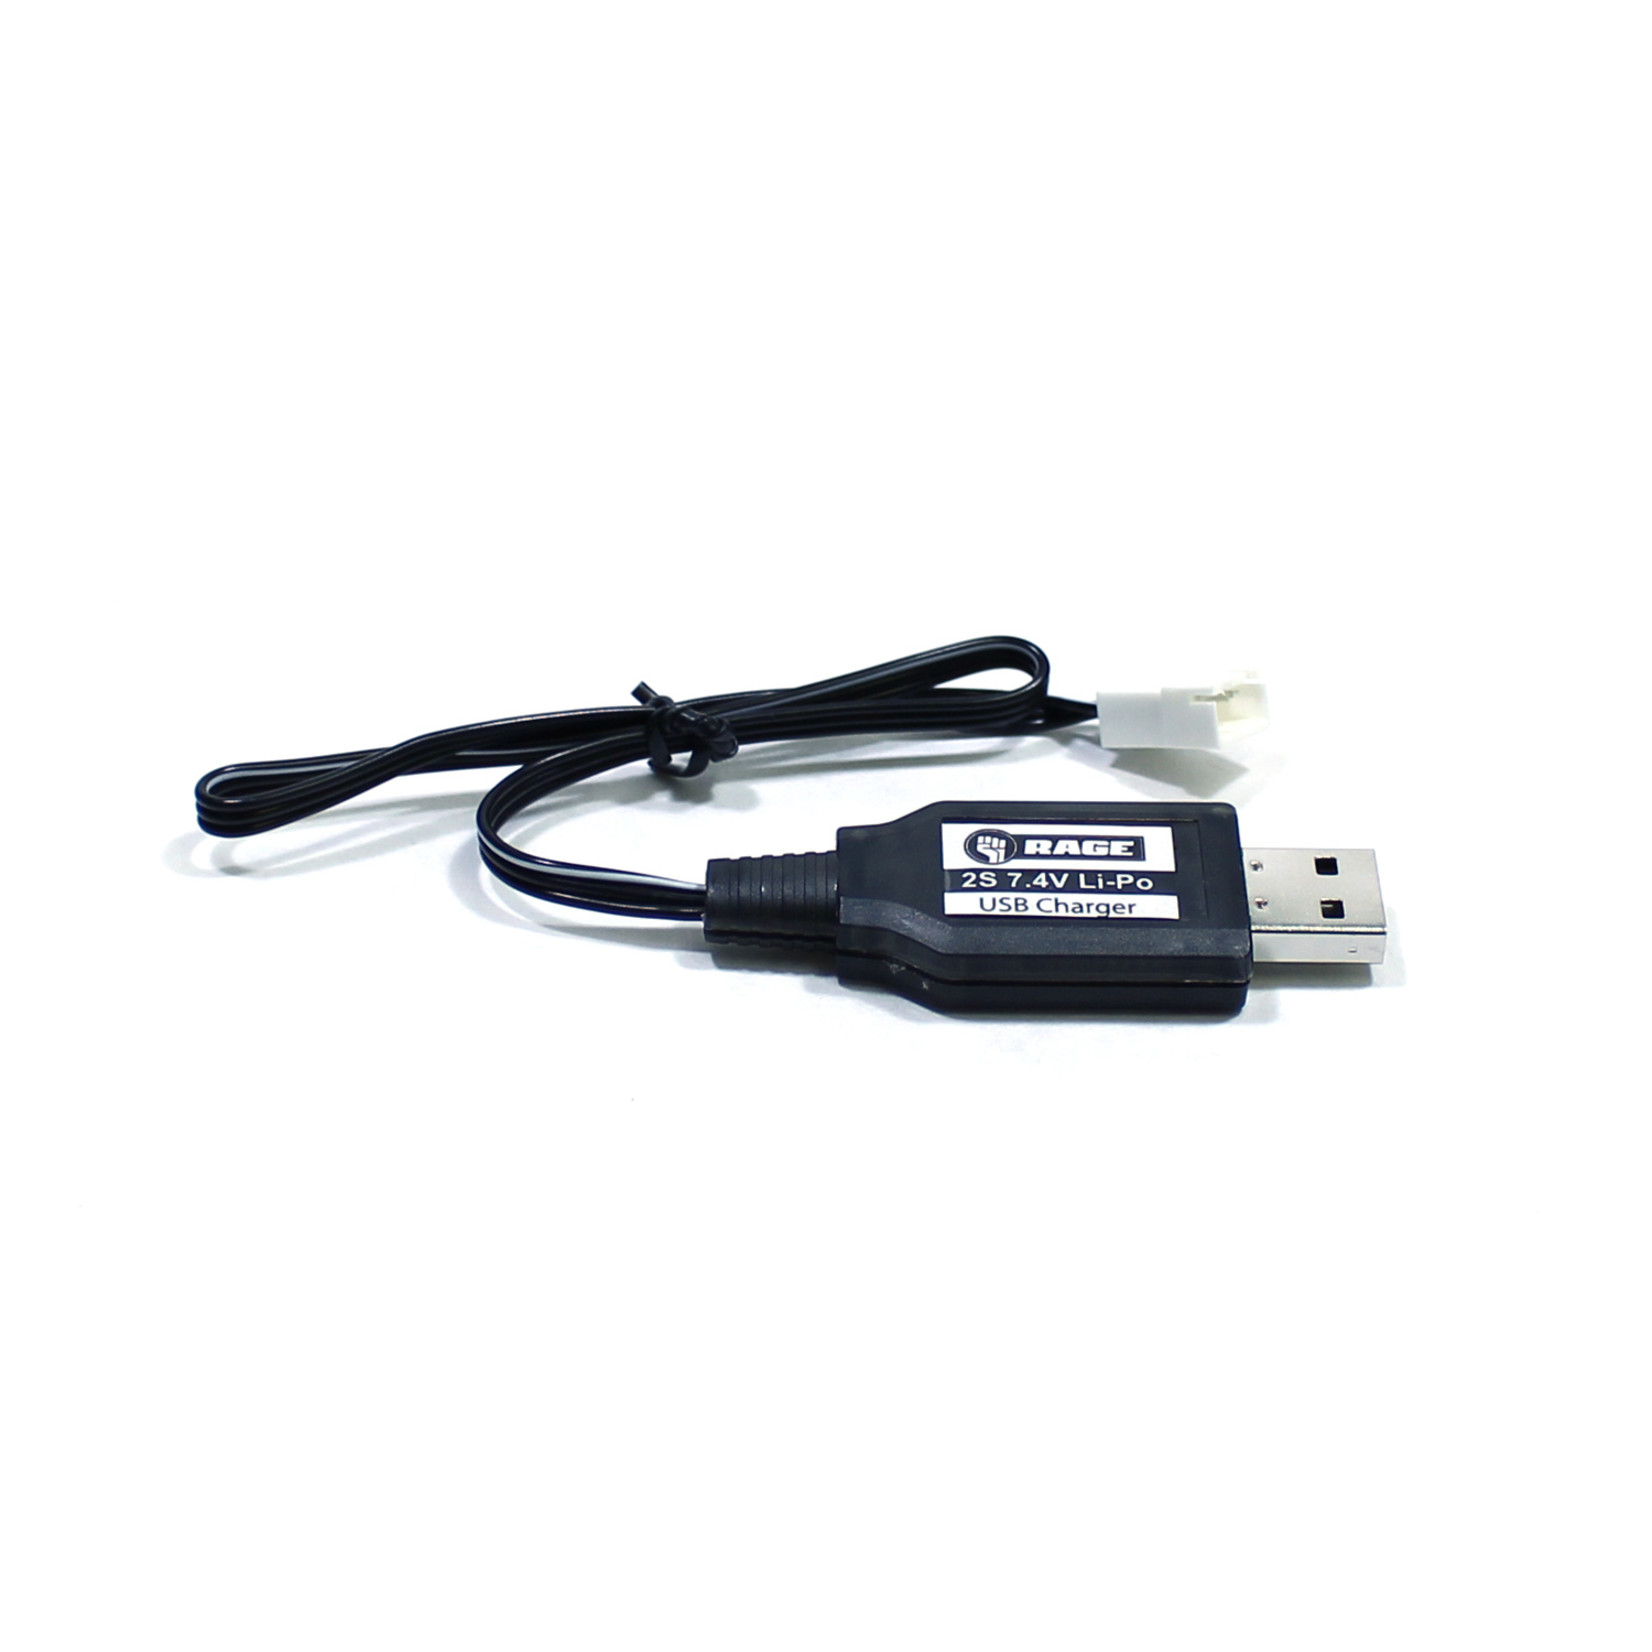 Rage R/C RGRA1154 - 2S USB Charger: Super Cub 750, Super Cub 750 BL